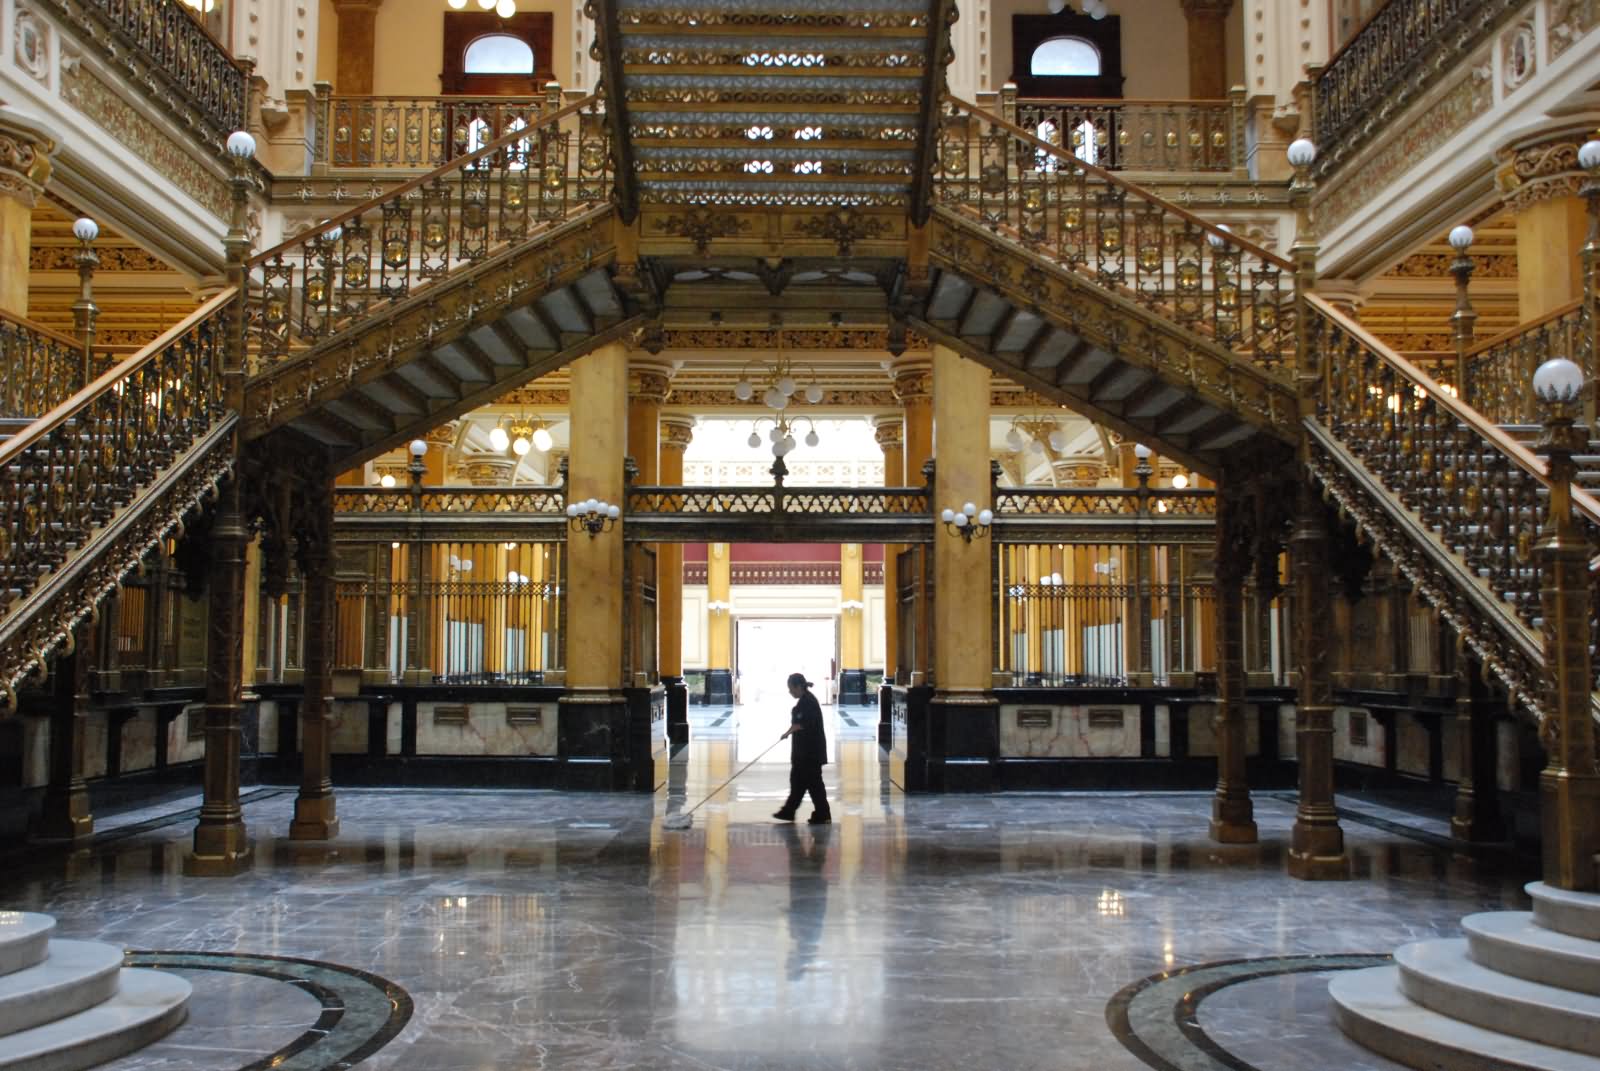 Interior View Of The Palacio de Bellas Artes In Mexico